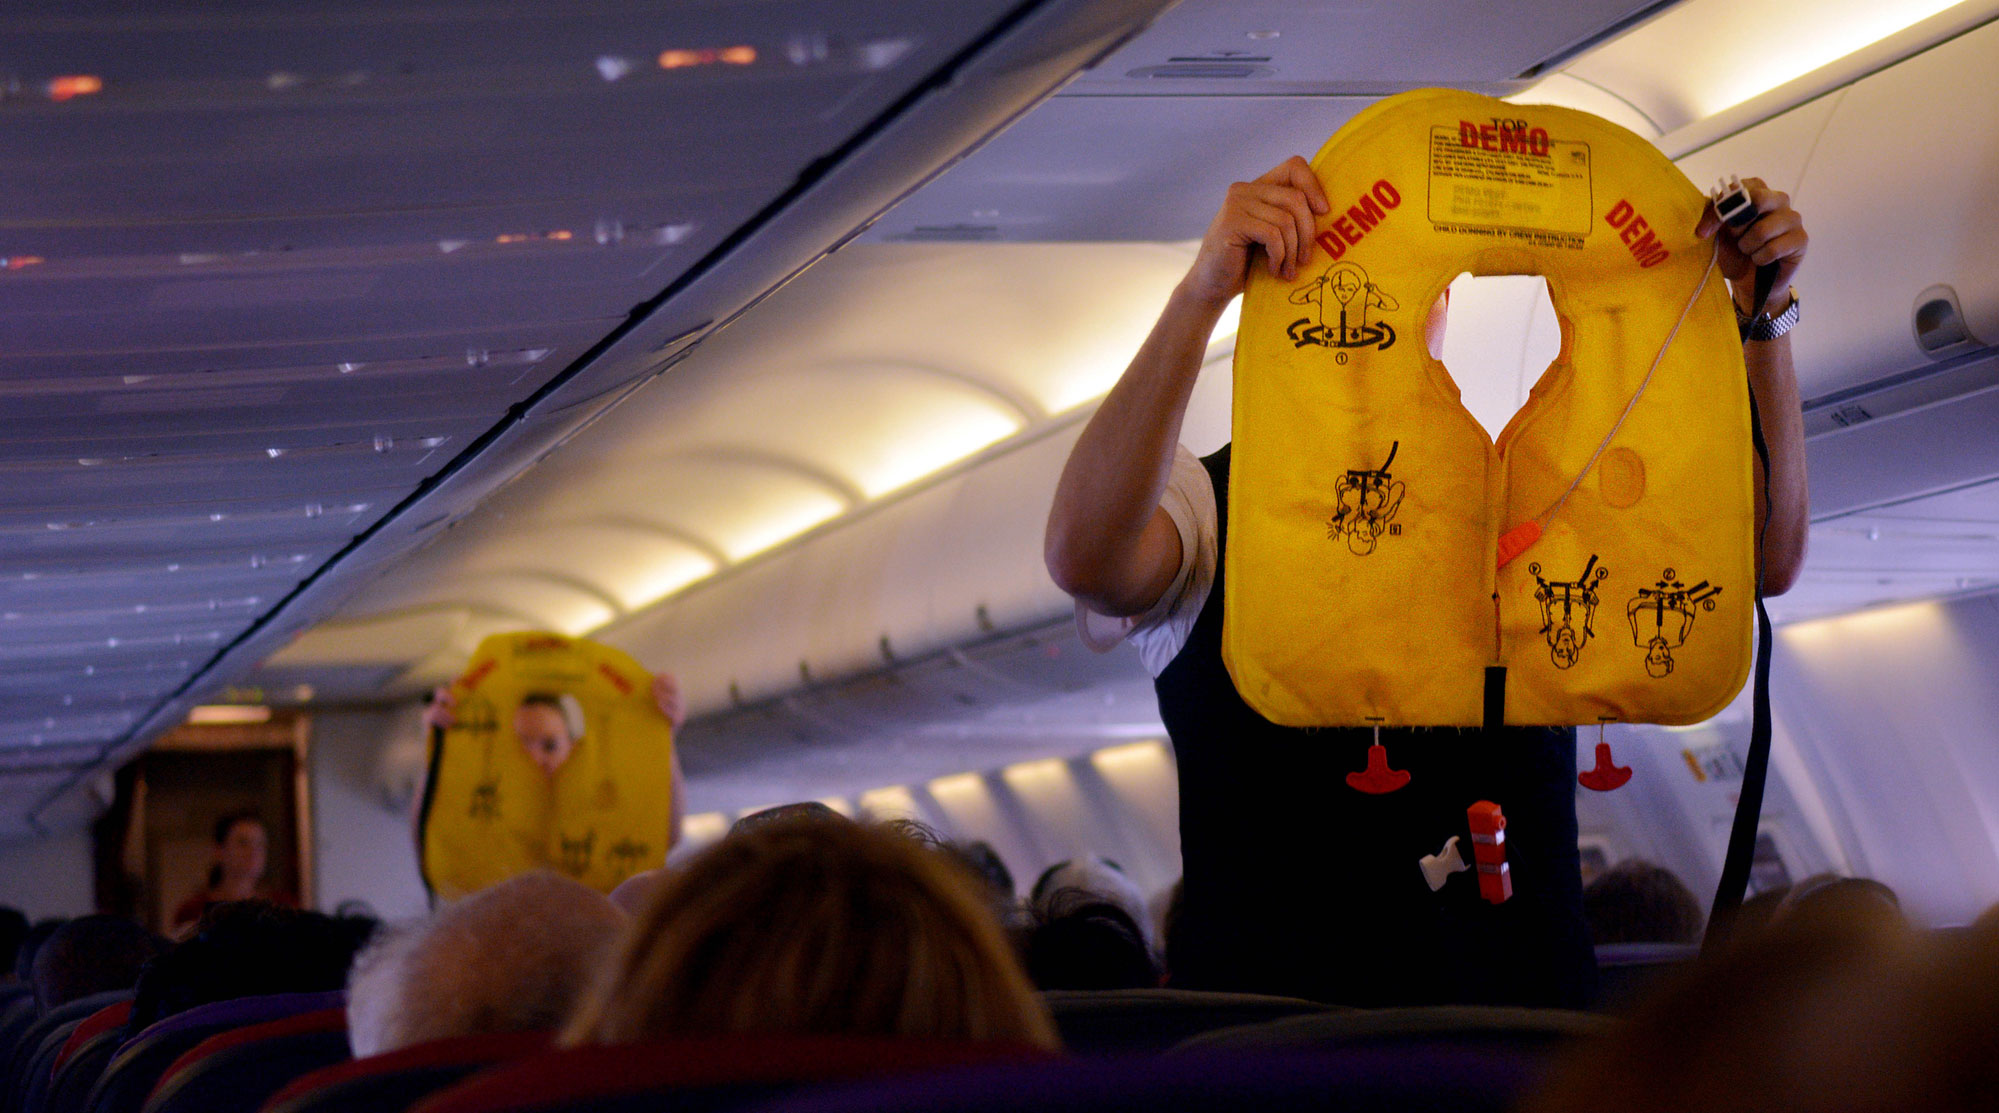 Спасательные маски в самолете